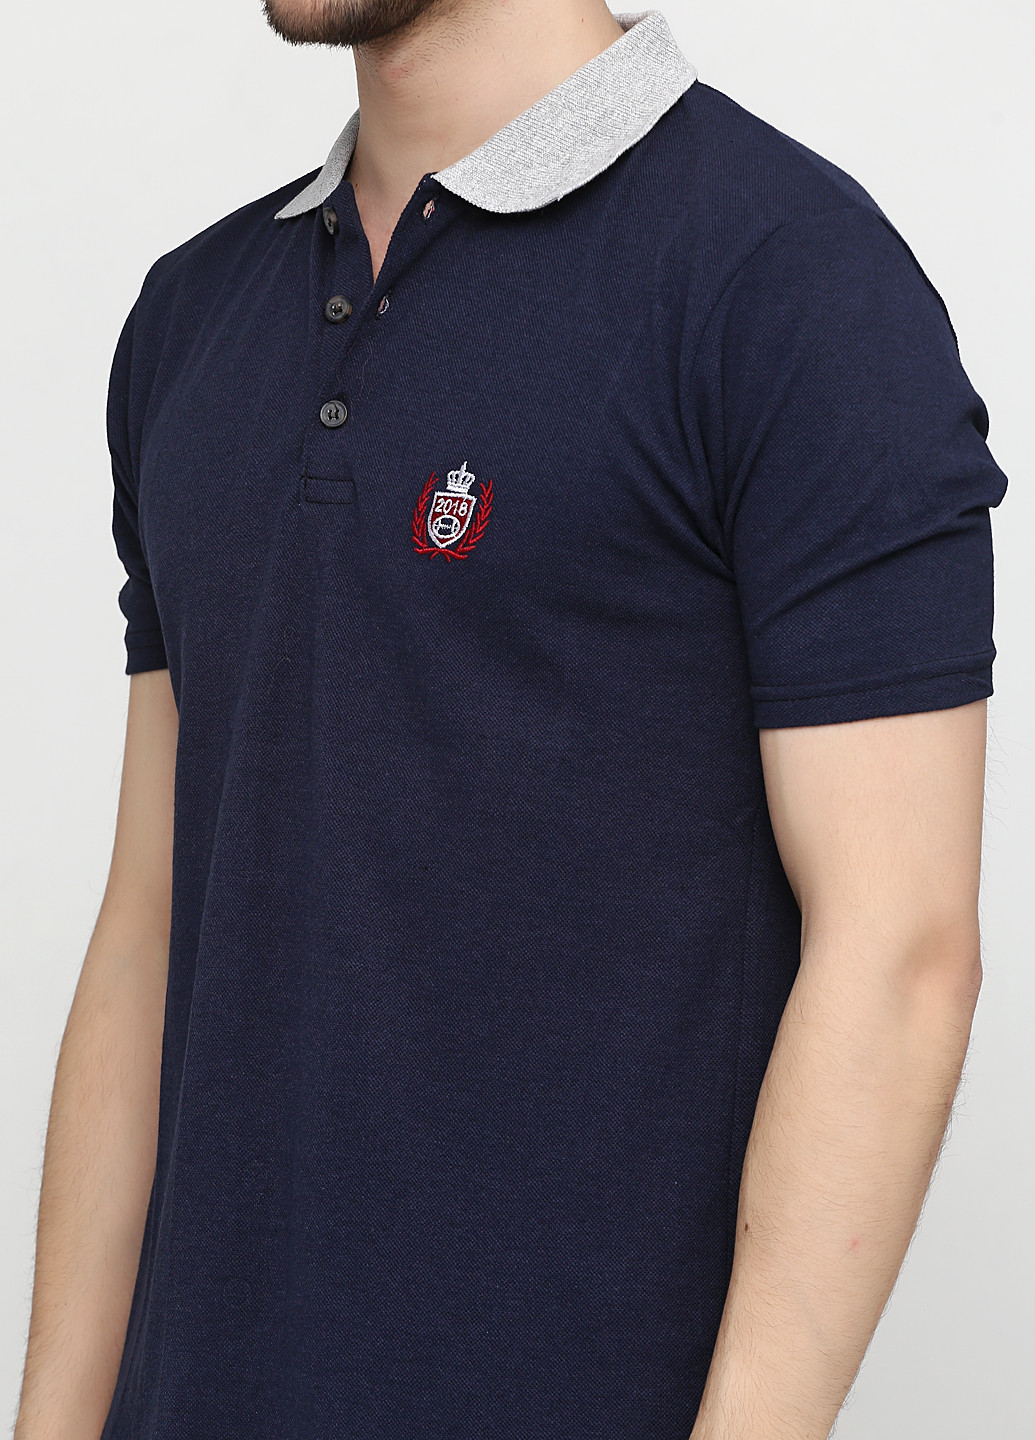 Темно-синяя футболка-поло для мужчин Chiarotex с логотипом